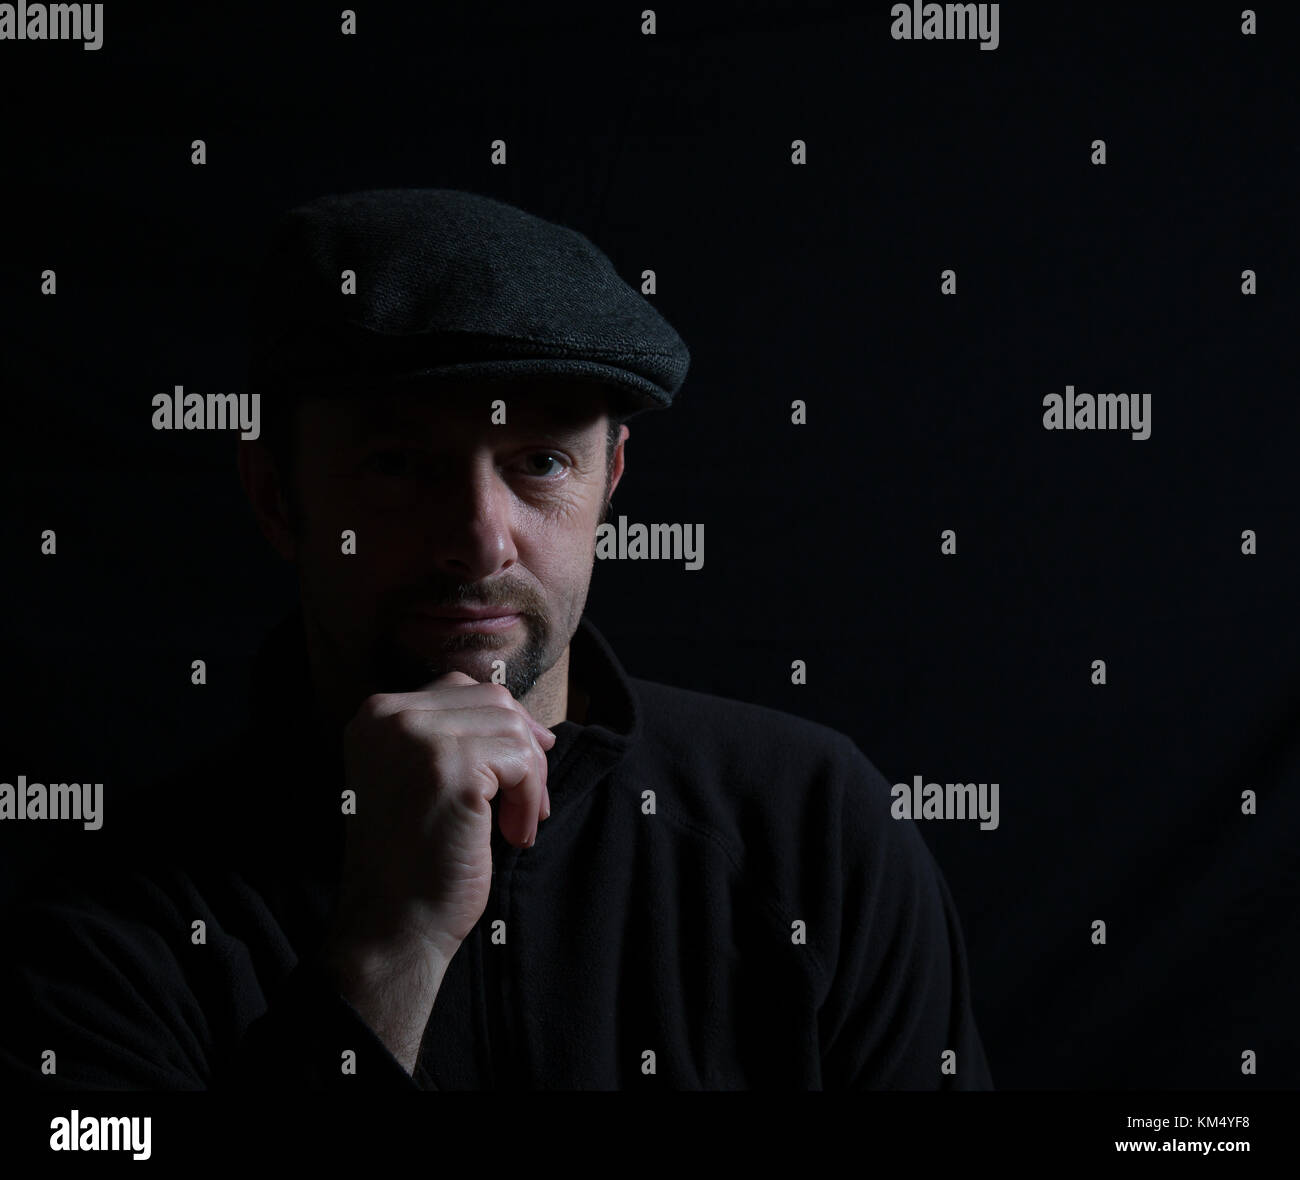 Künstlerisches Porträt eines isolierten Mannes in dunkler Mütze, halb beleuchtetes Gesicht, starrend auf Kamera, Hand auf Kinn, im Rampenlicht. Subtile Beleuchtung erzeugt ein Schattenbild. Stockfoto